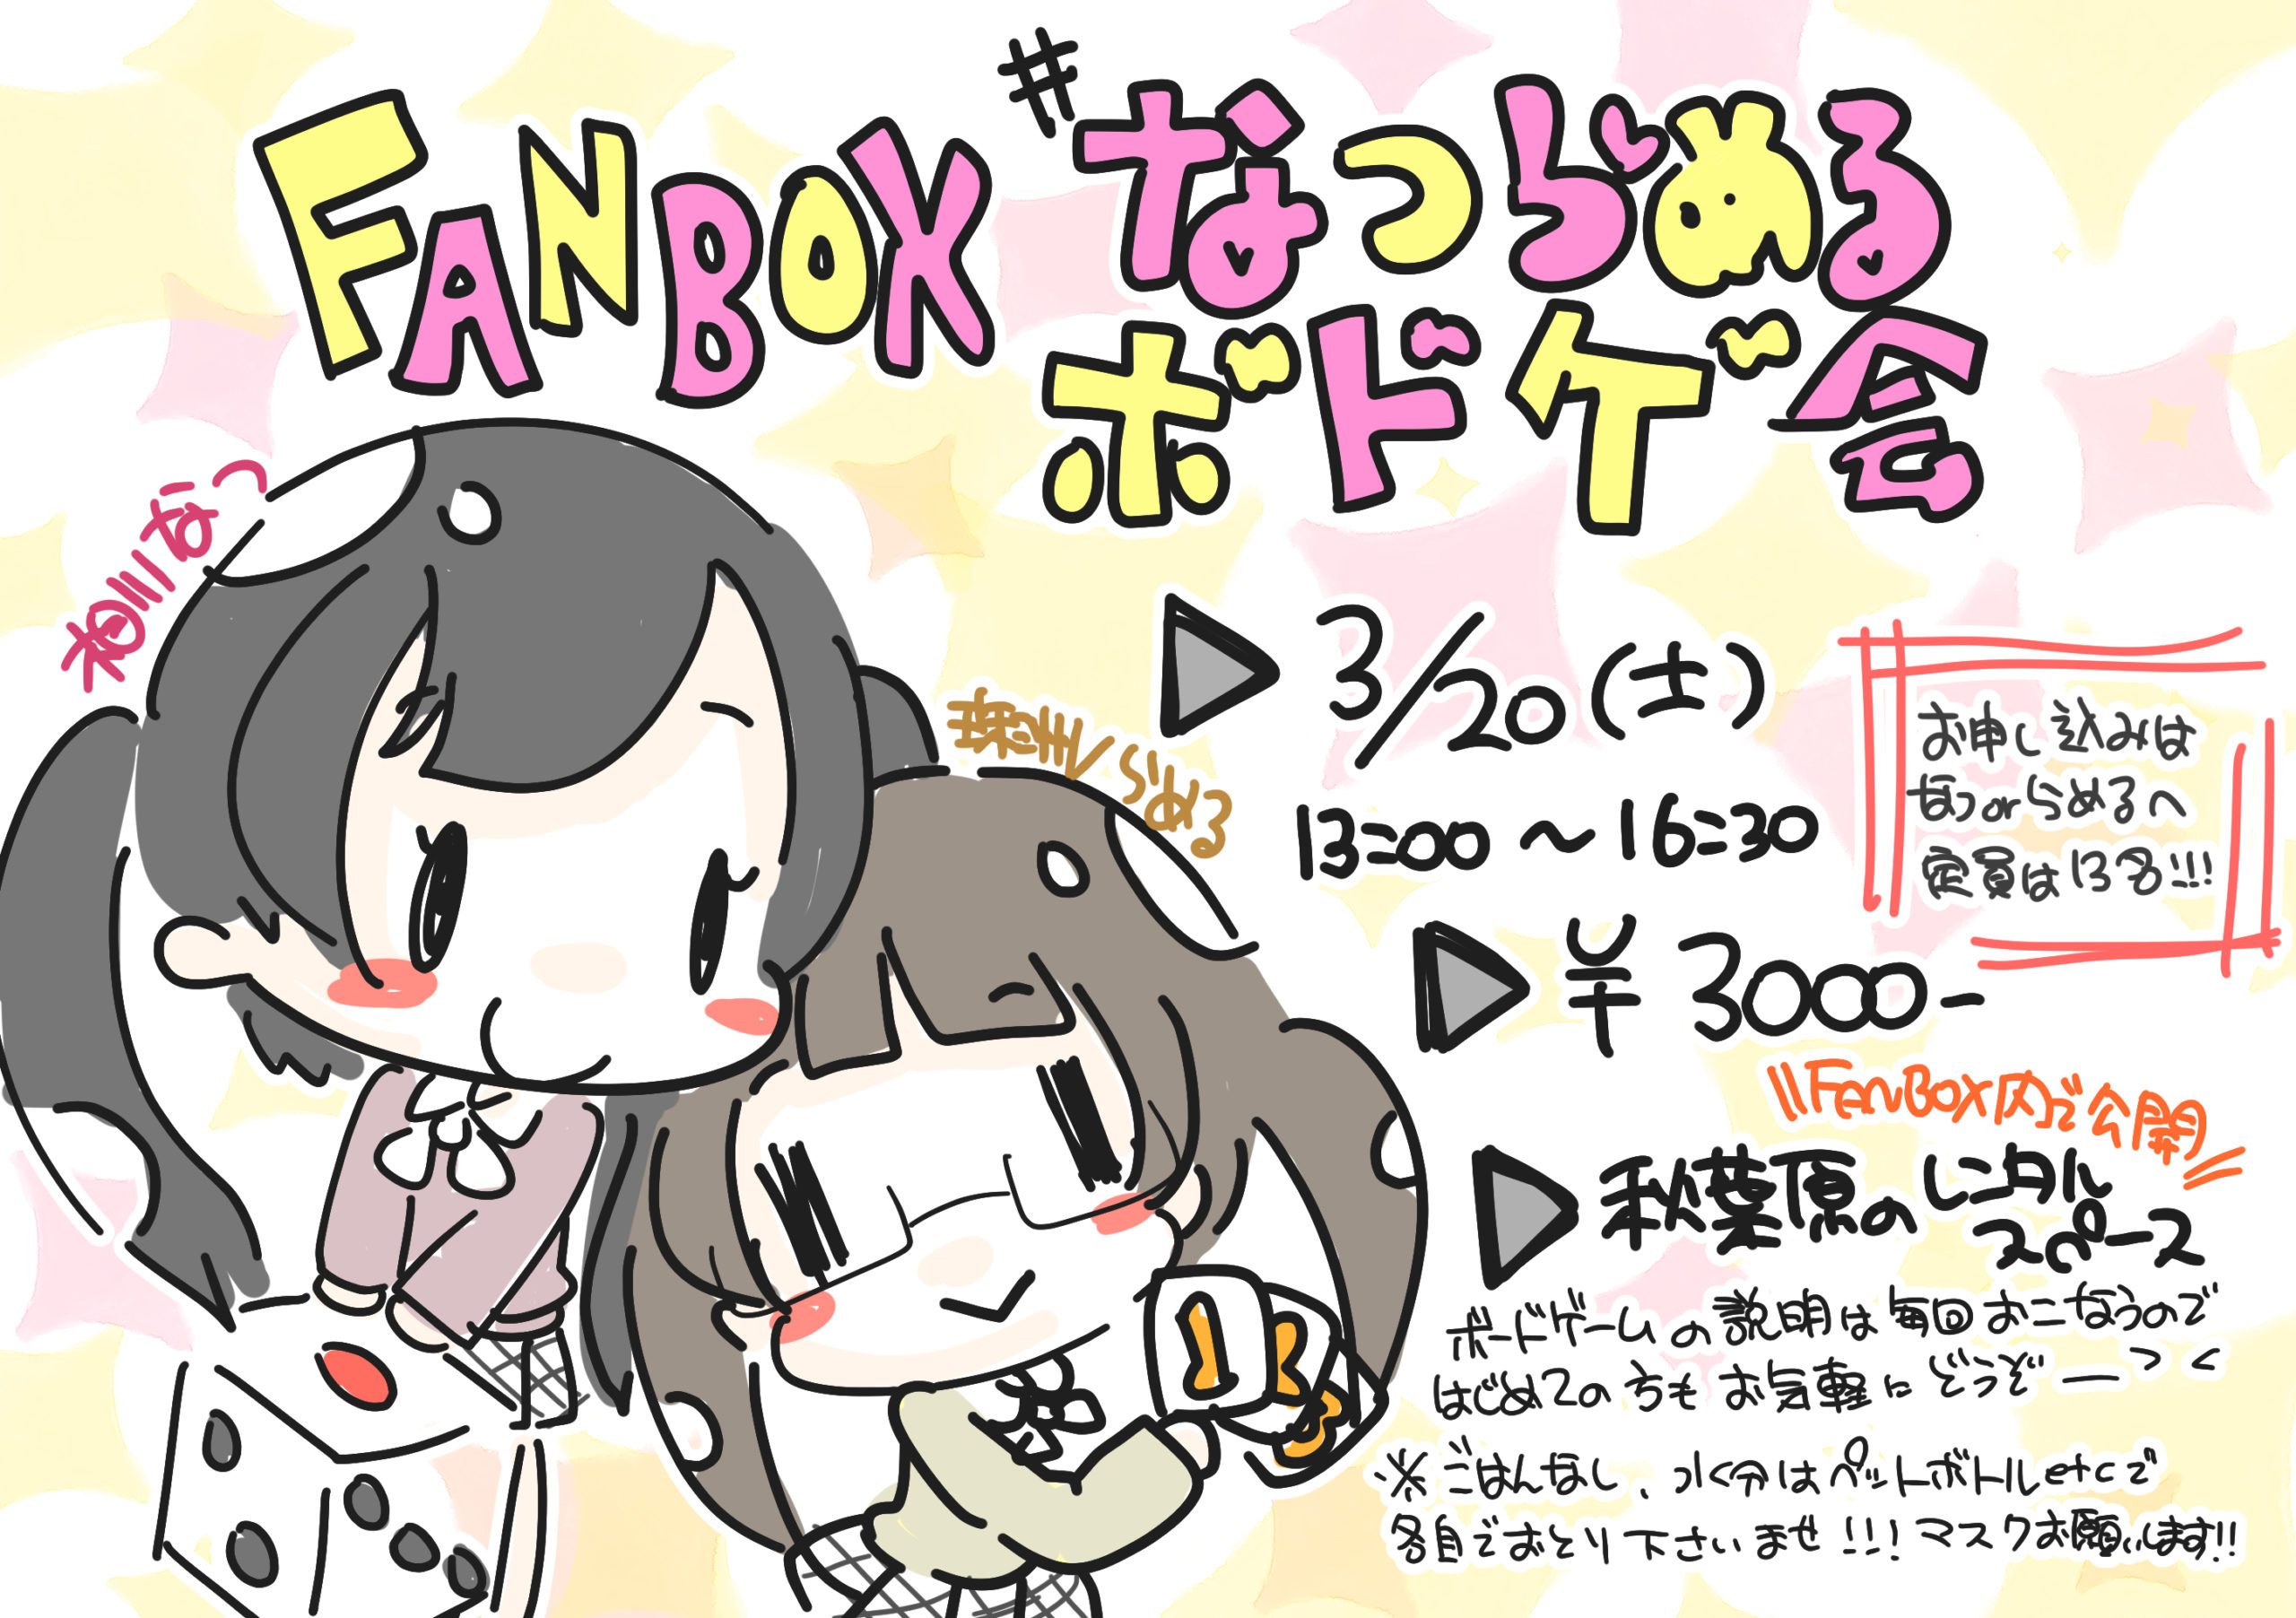 3月20日(土) FANBOX限定!!「#なつらめるボドゲ会」を開催します!!!